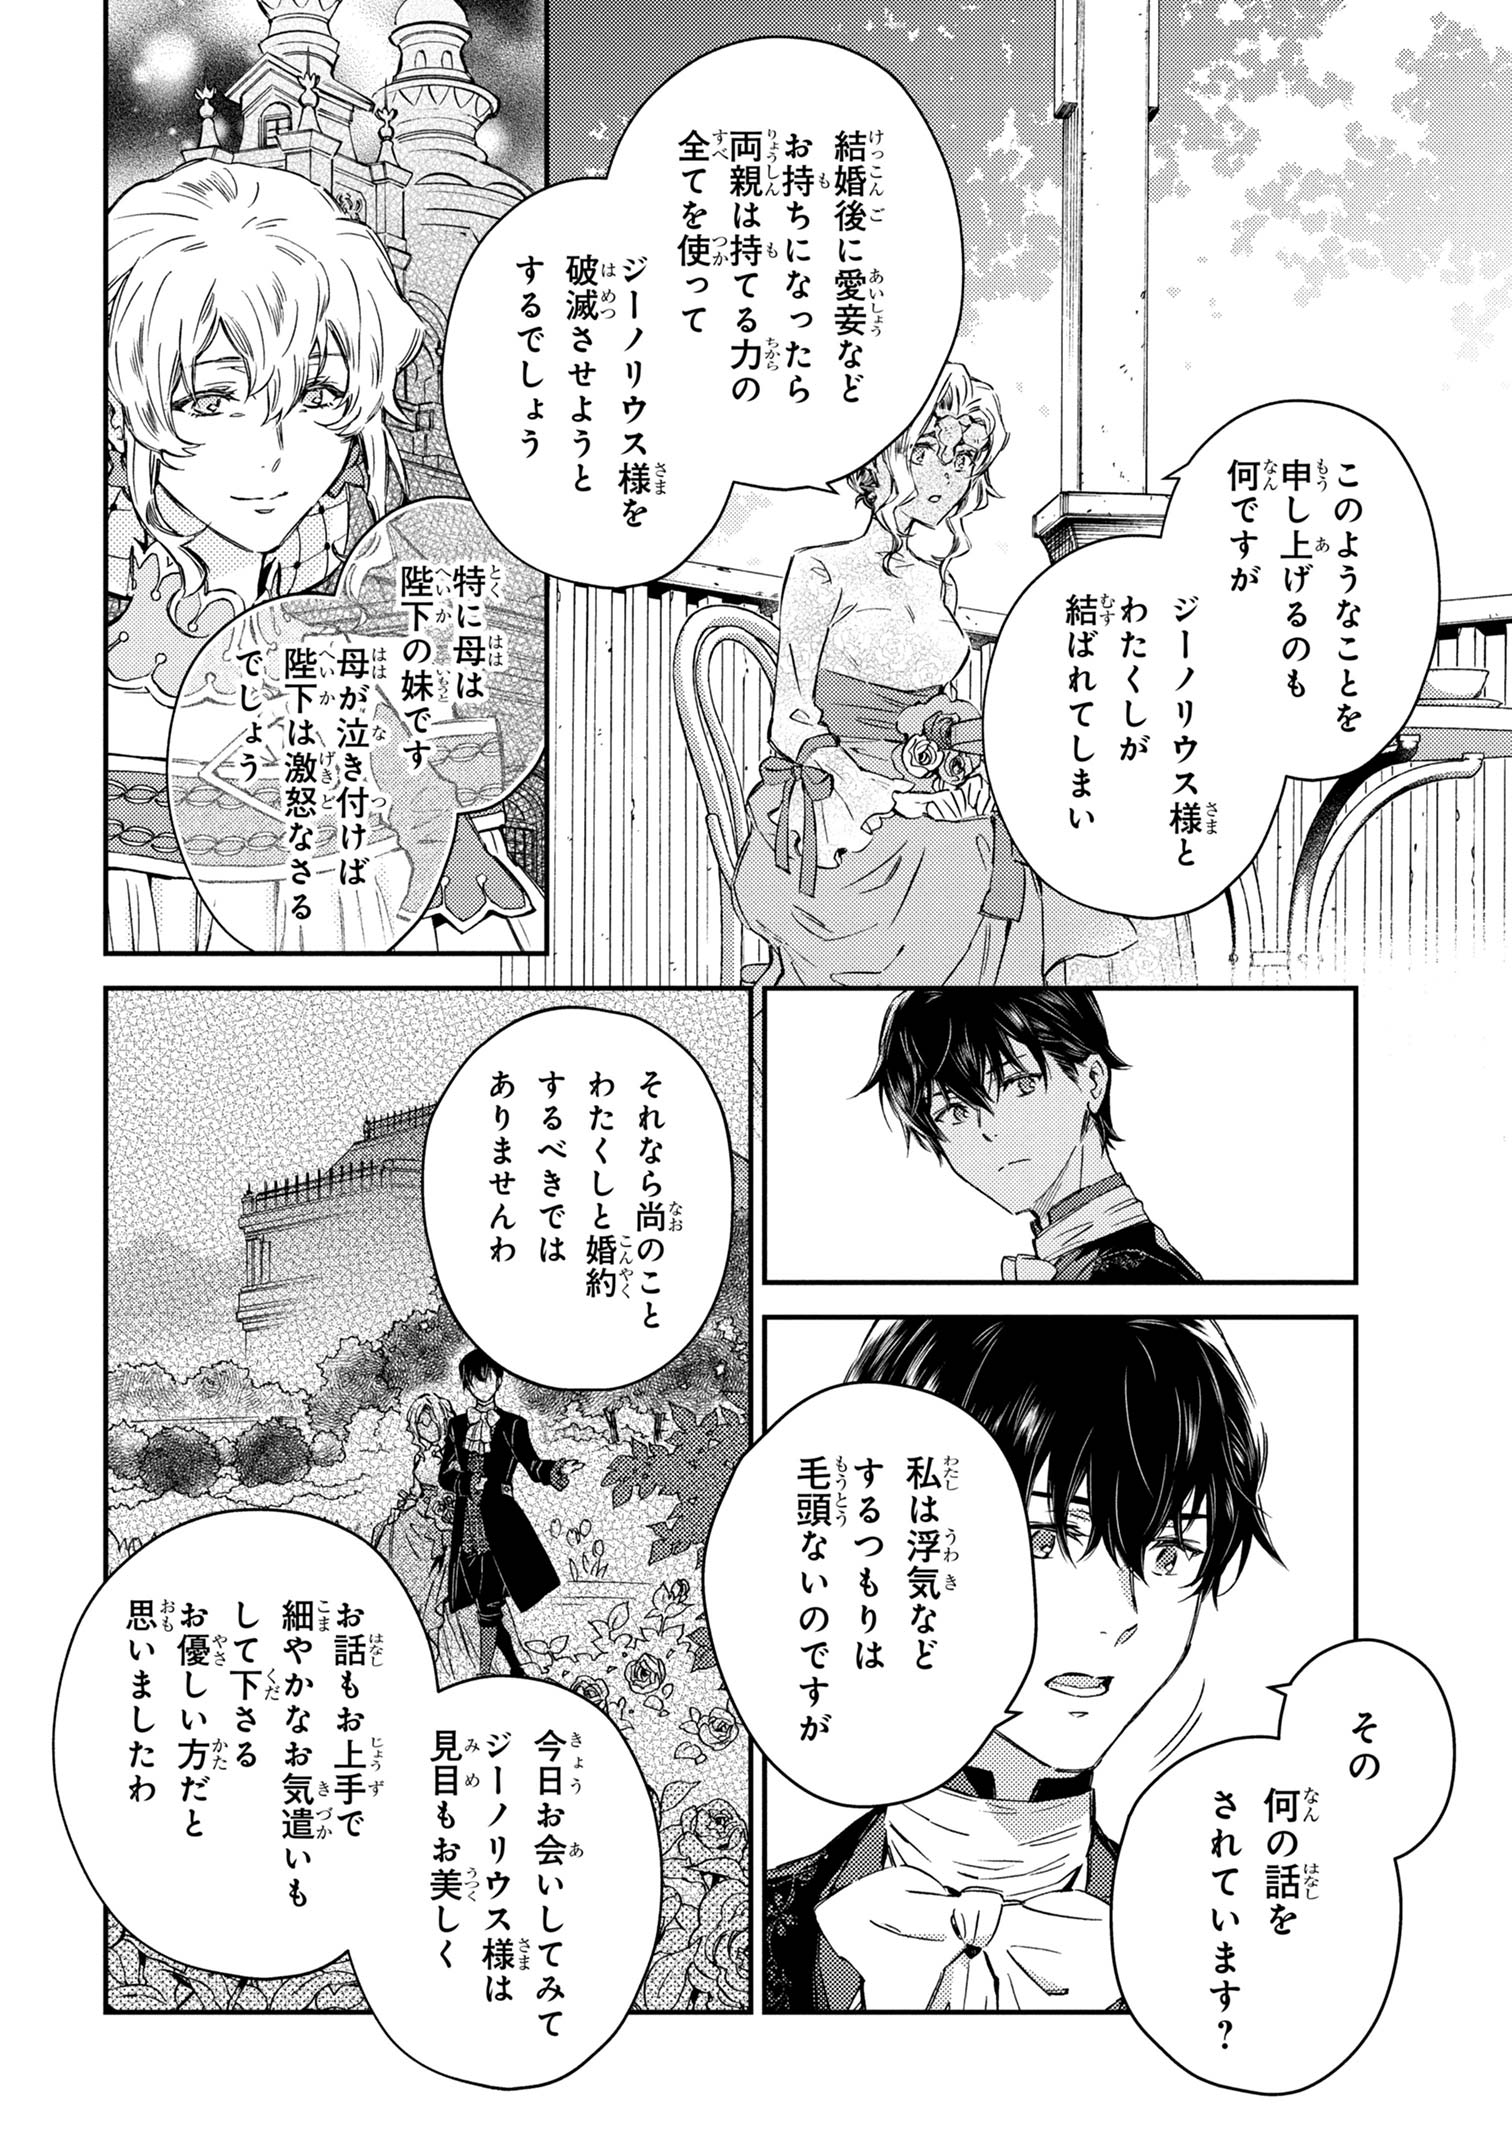 Goblin Reijou to Tensei Kizoku ga Shiawase ni Naru Made - Chapter 1.5 - Page 3